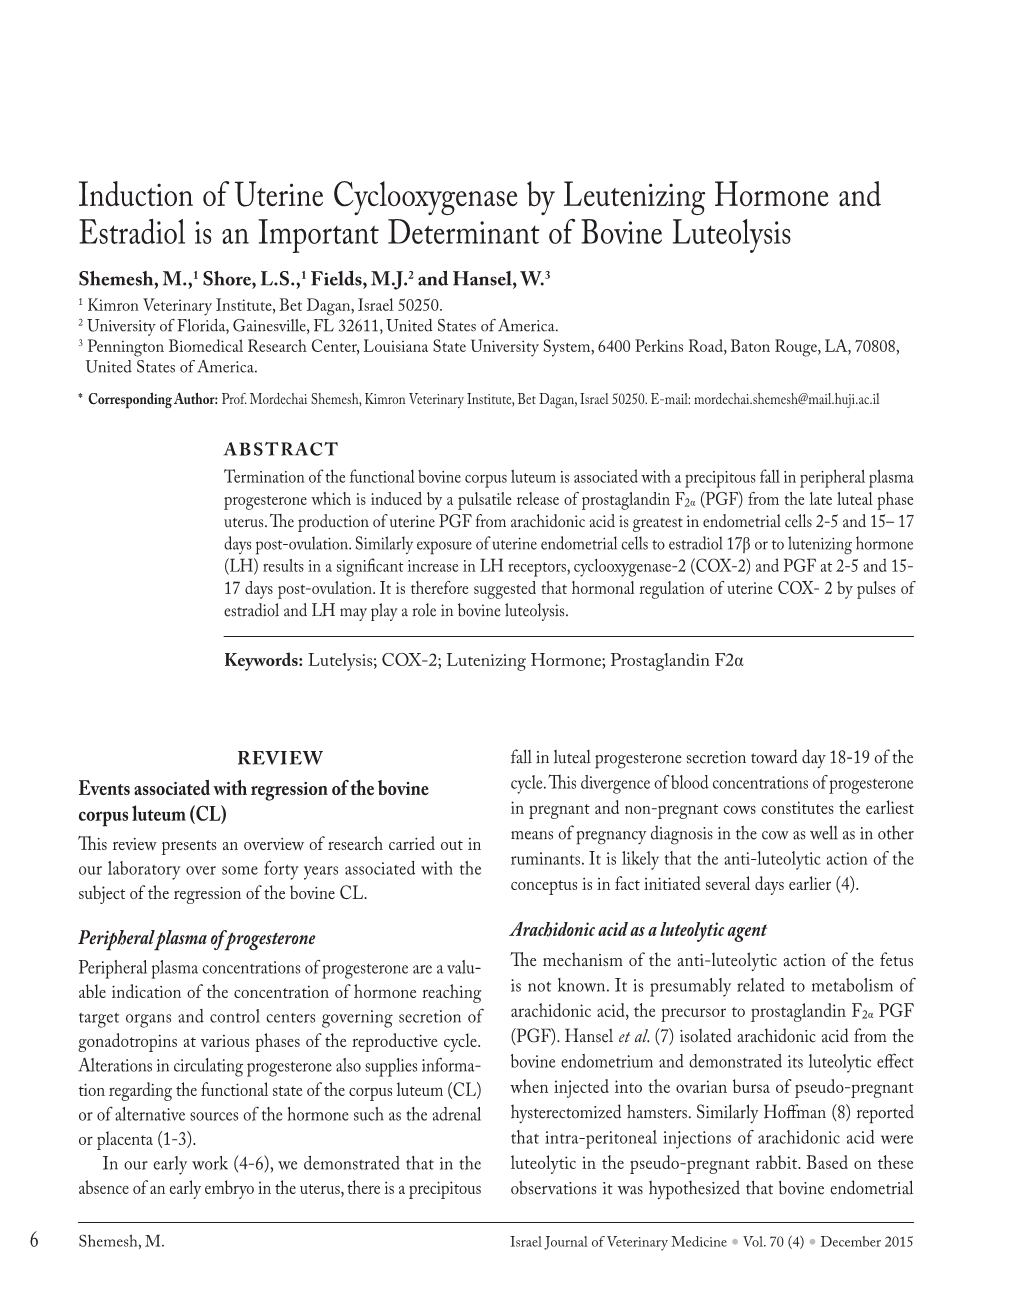 Induction of Uterine Cyclooxygenase by Leutenizing Hormone And